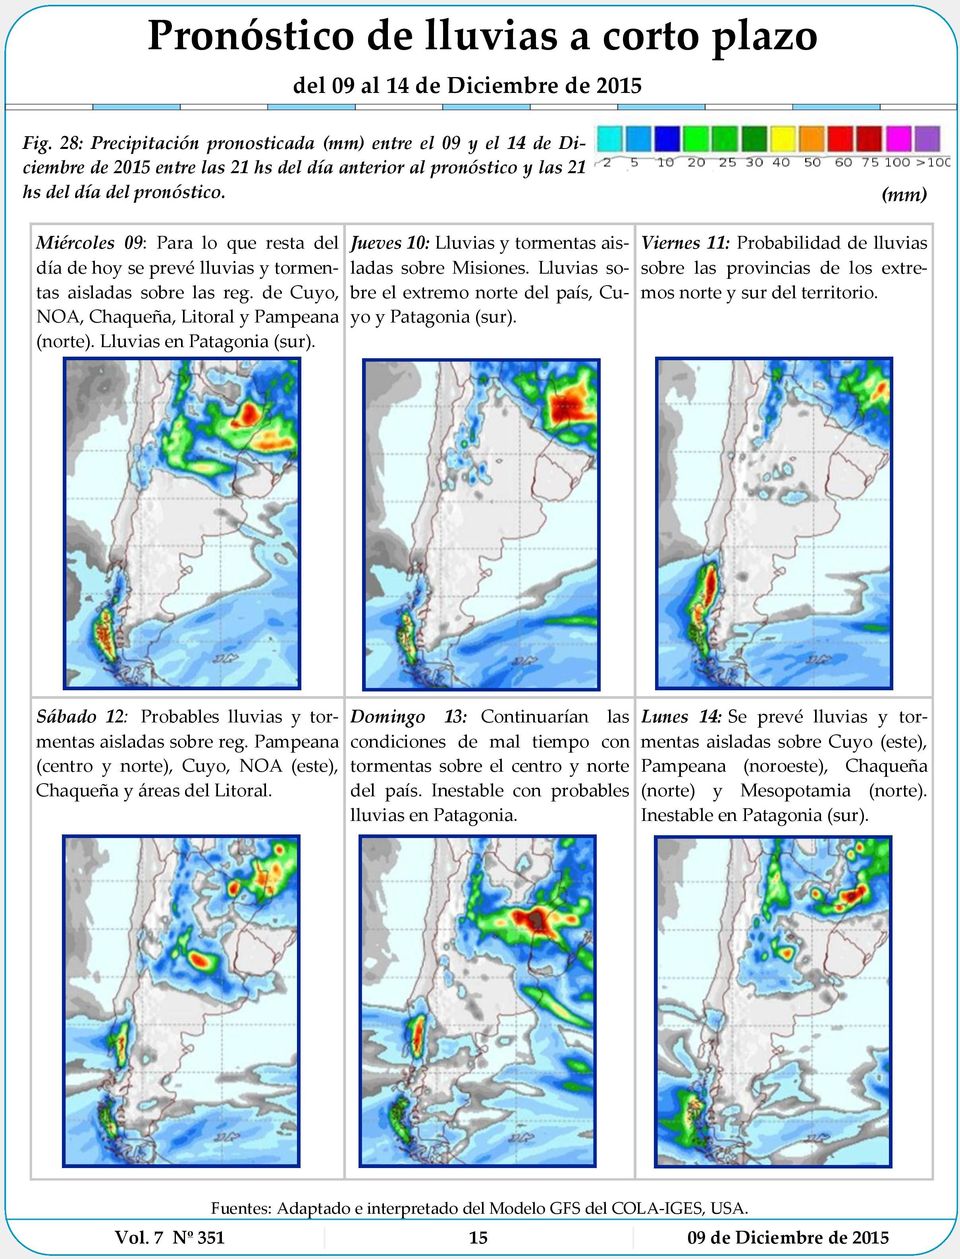 (mm) Miércoles 09: Para lo que resta del día de hoy se prevé lluvias y tormentas aisladas sobre las reg. de Cuyo, NOA, Chaqueña, Litoral y Pampeana (norte). Lluvias en Patagonia (sur).